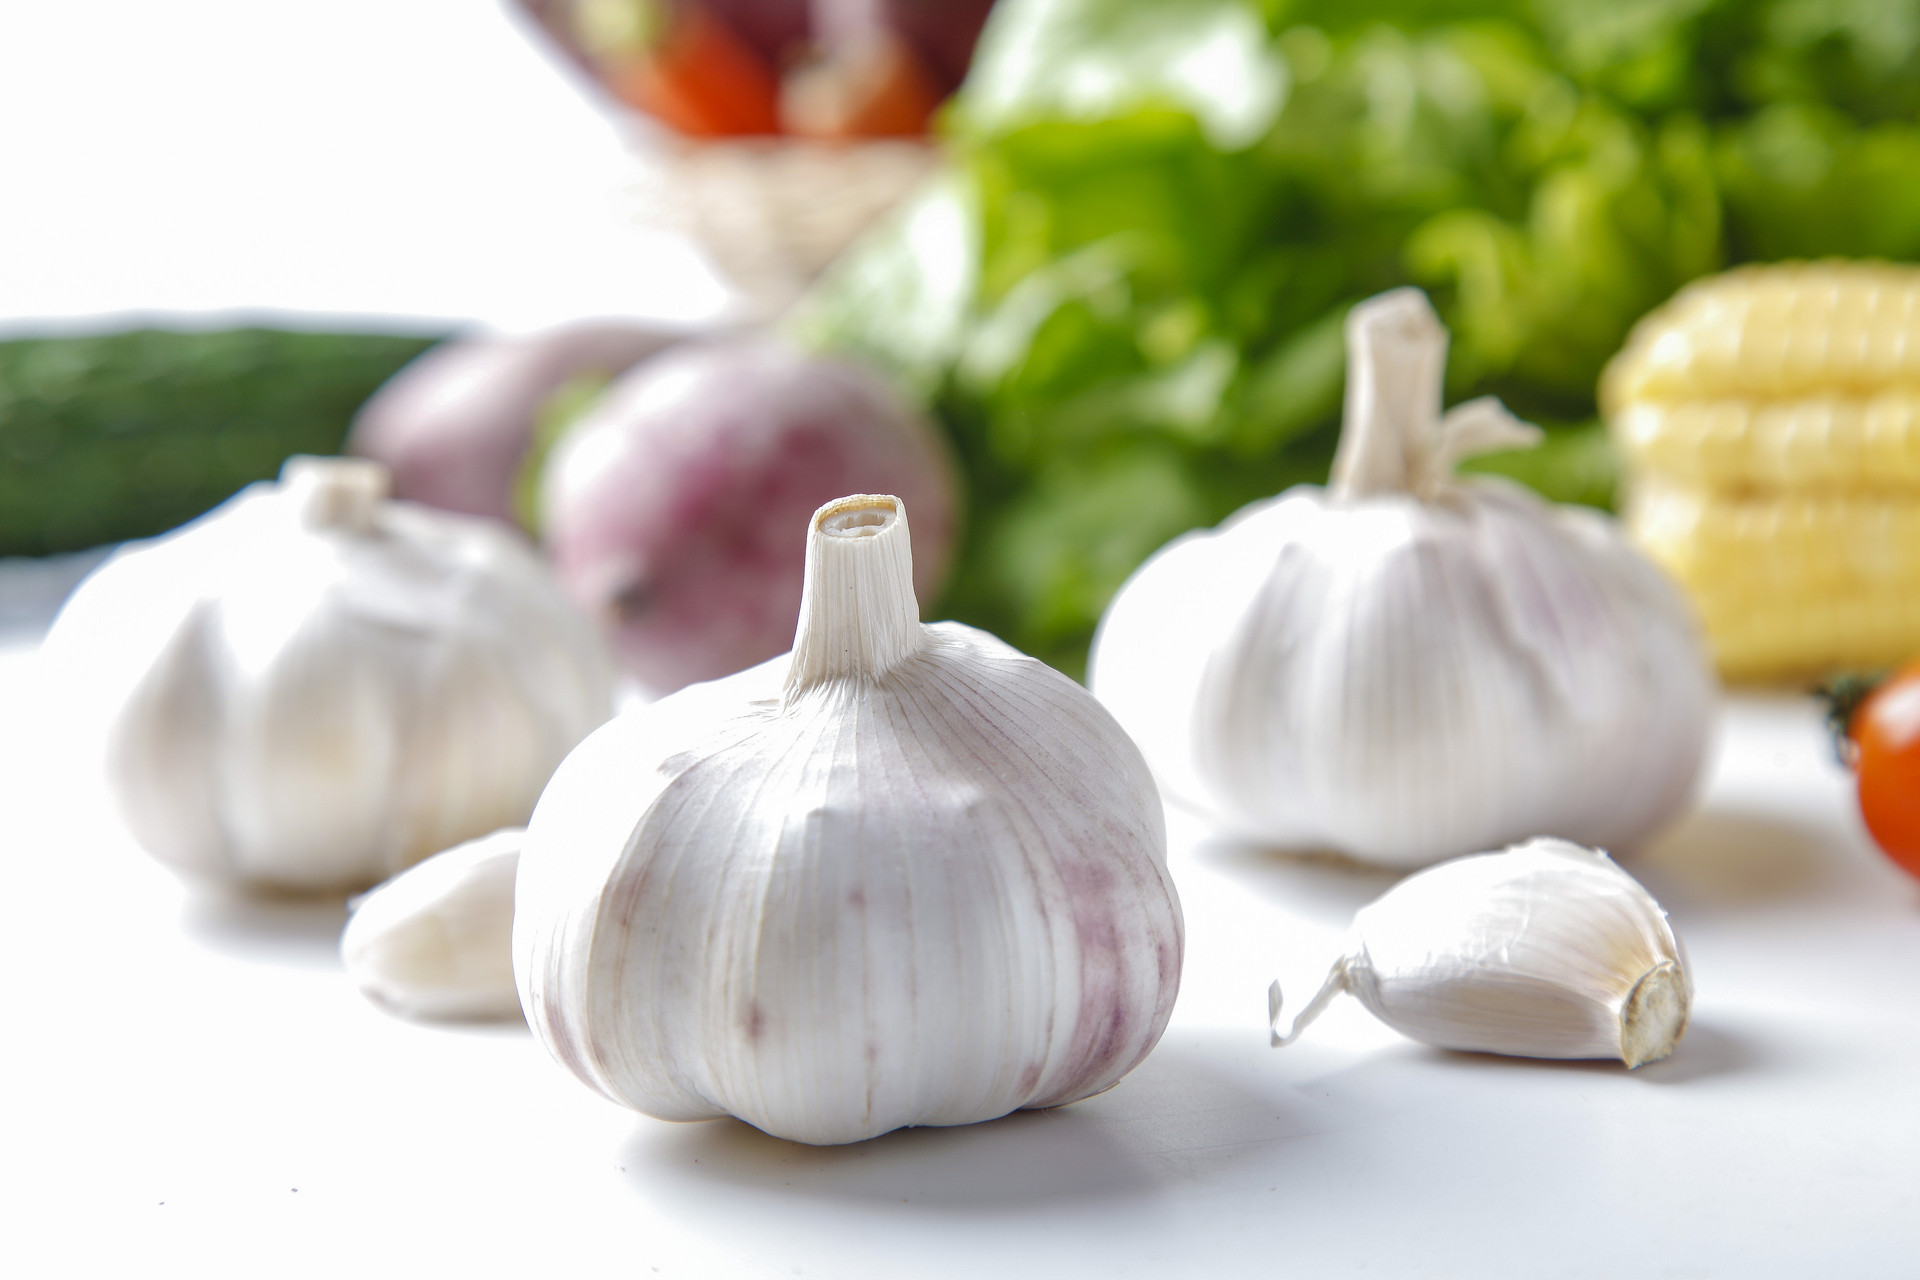 Perché l'aglio al supermercato non germina, lo compri e lo lasci germogliare per qualche giorno?